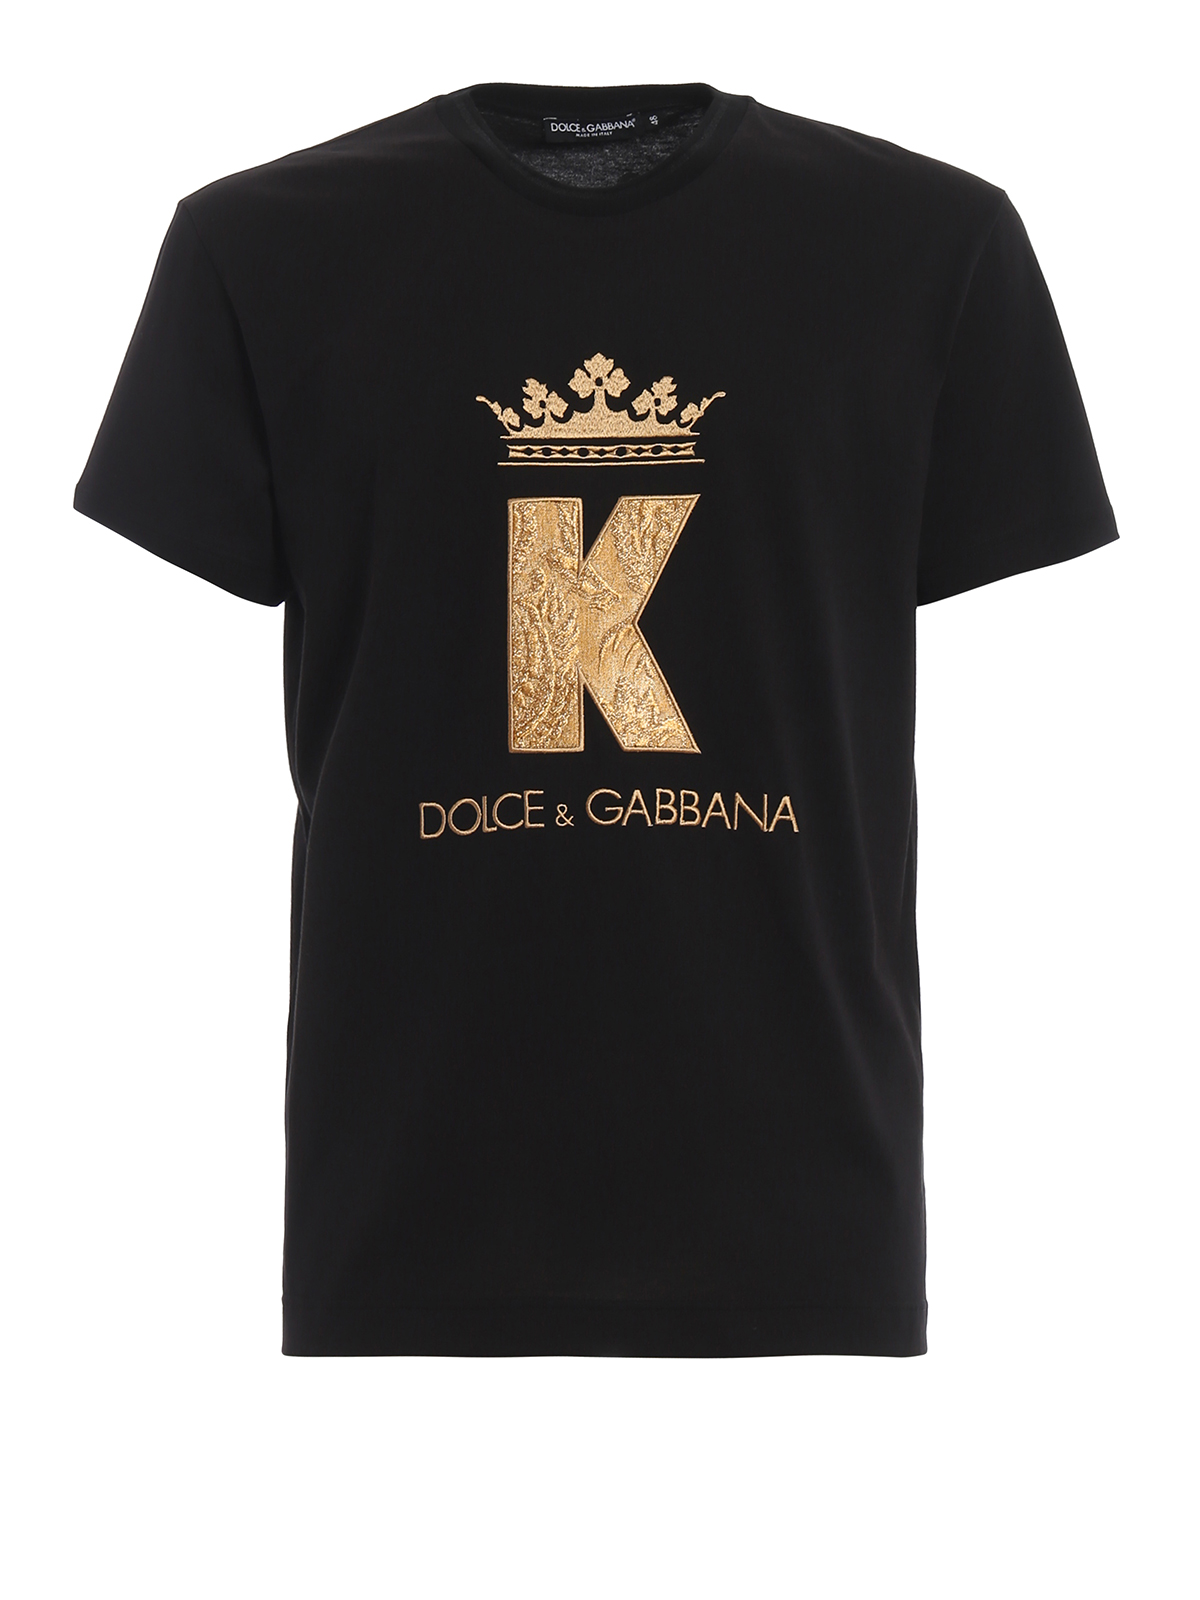 dolce gabbana t shirt king